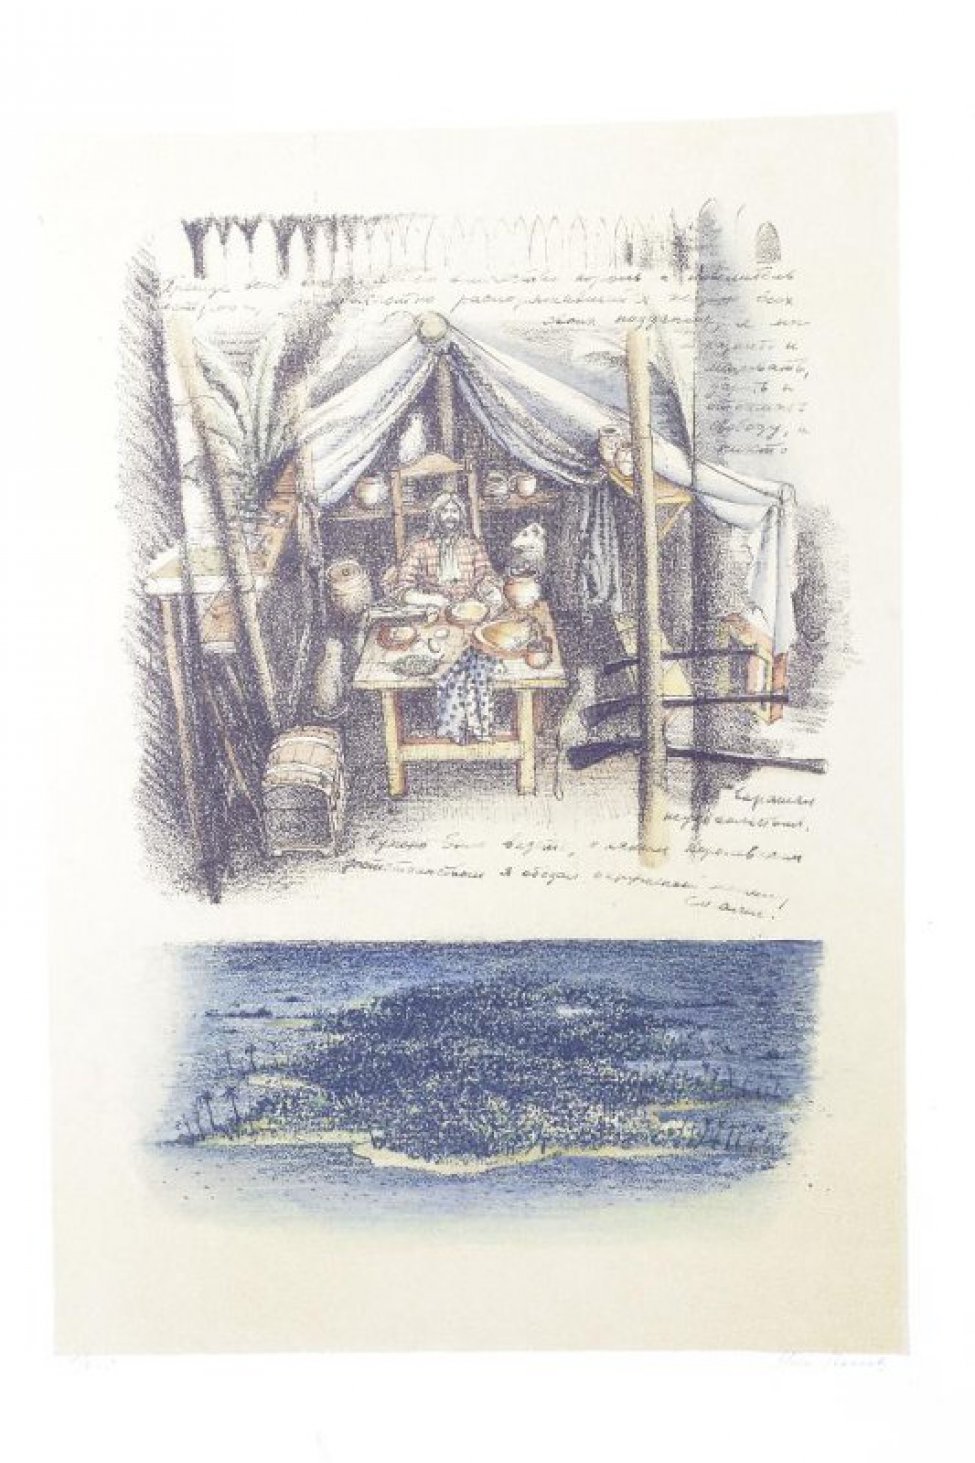 В верхней части листа дано изображение палатки в разрезе. В центре композиции стол, за которым сидит мужчина; слева от него собака. В левой части изображения внизу - сундук. В нижней части листа изображен морской пейзаж с островом.